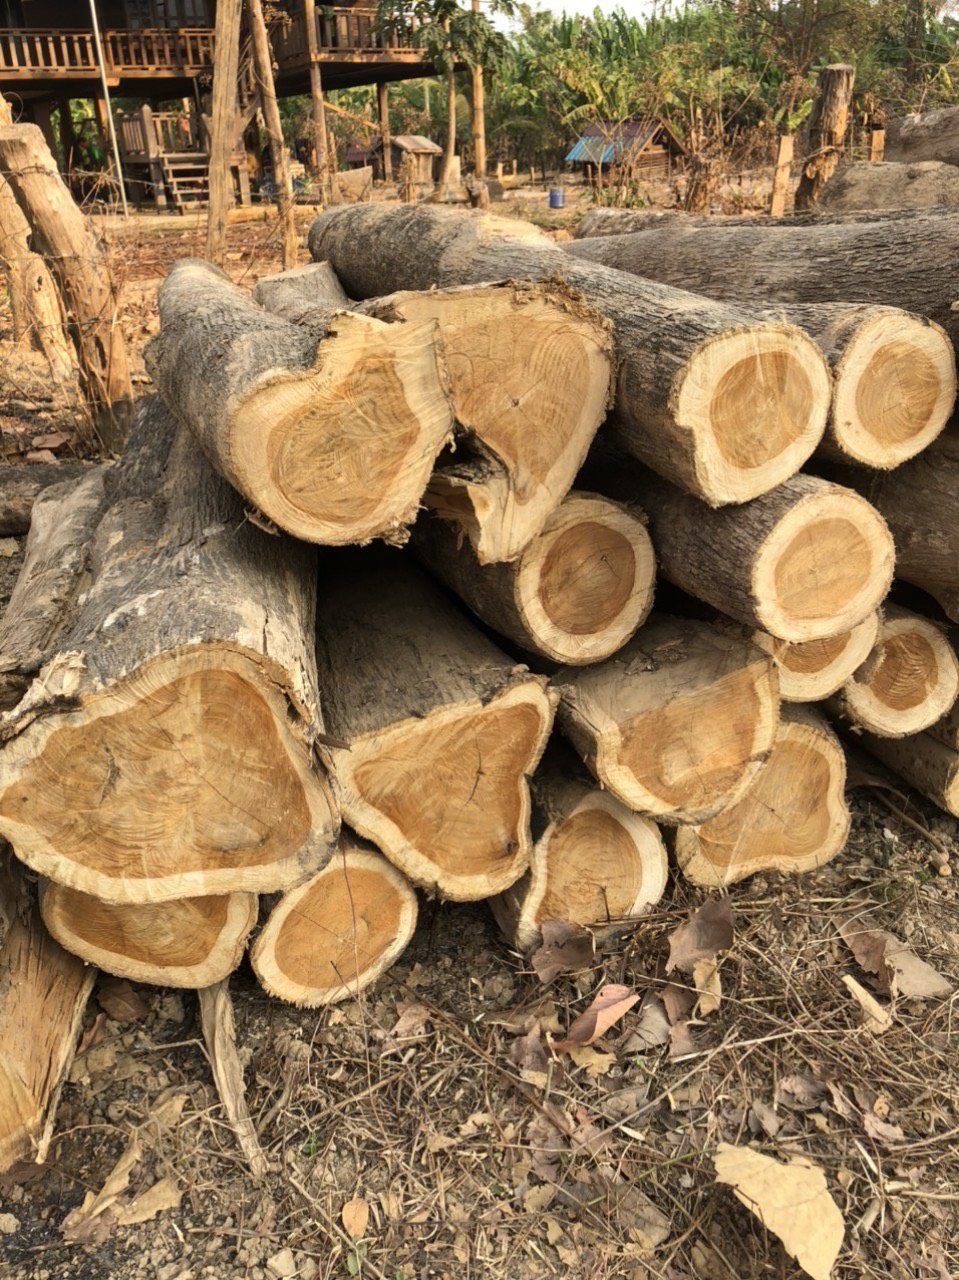 Đơn hàng xuất khẩu gỗ Teak sang thị trường Trung Quốc GT01-040621